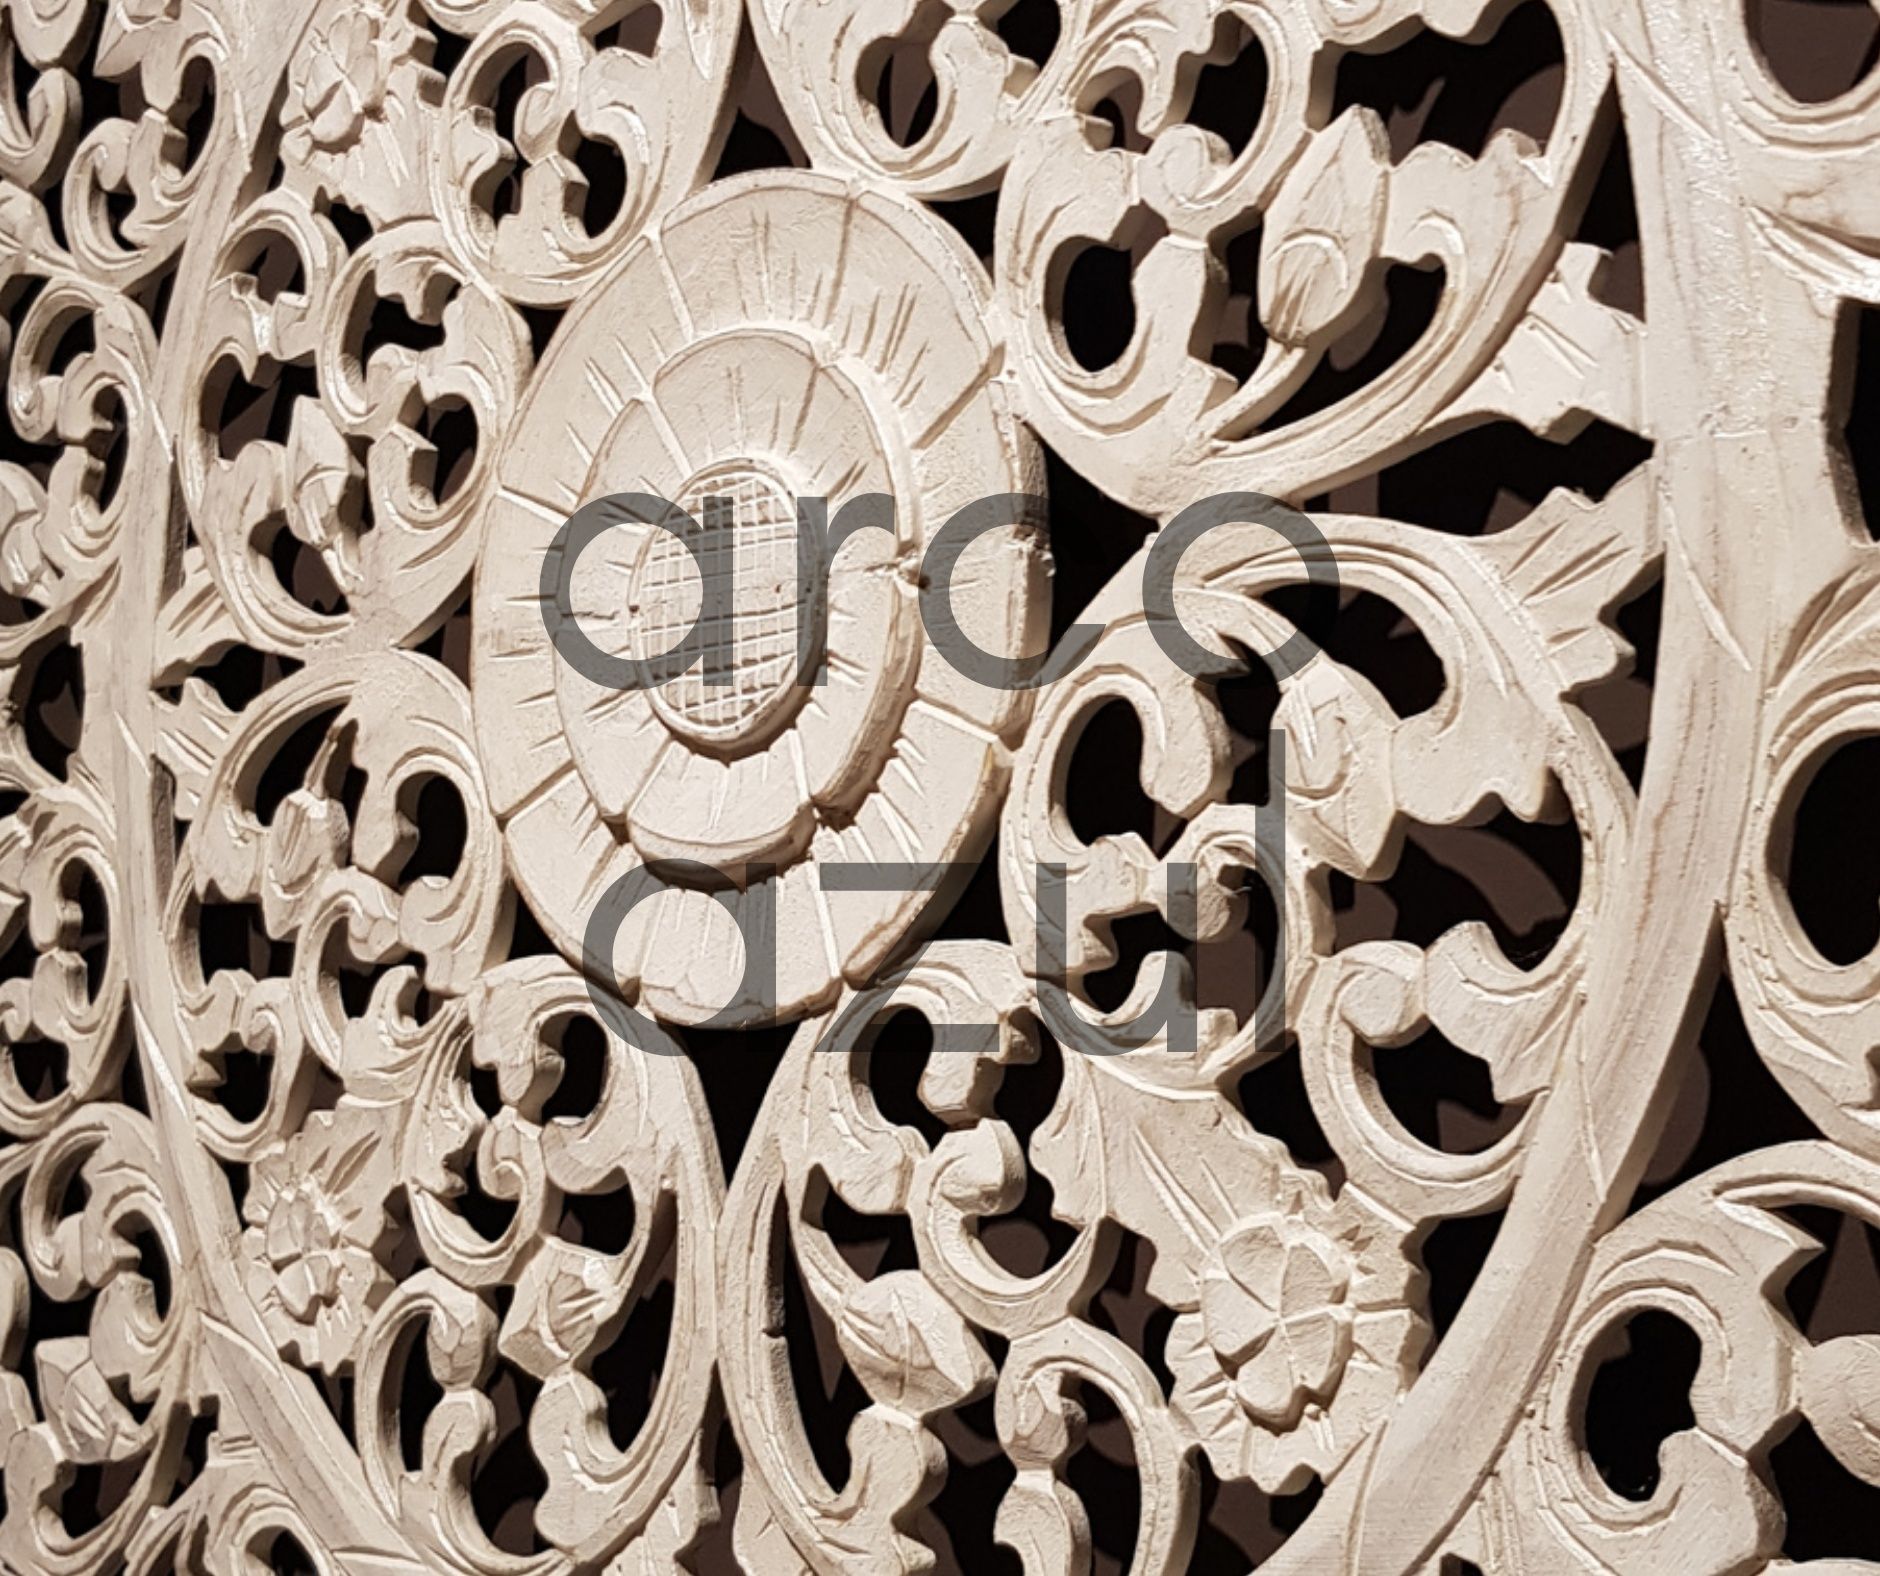 NOVO: Painel Decorativo / Cabeceira de Cama Mandala Branca 160x160cm